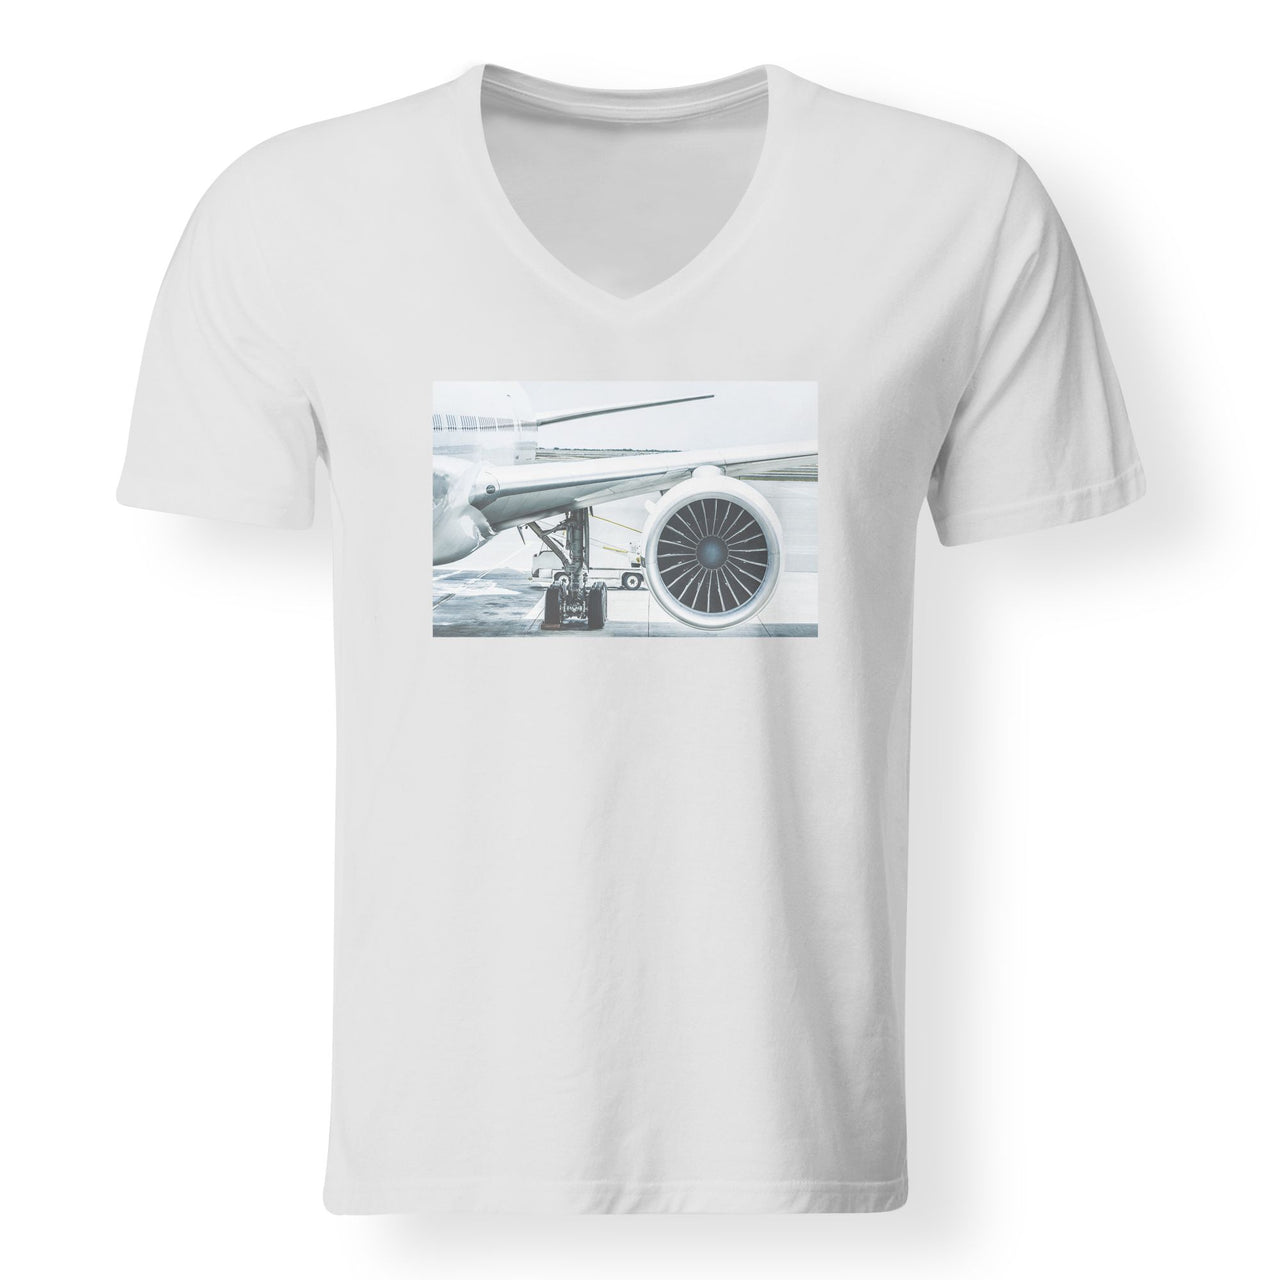 Amazing Aircraft & Engine Designed V-Neck T-Shirts